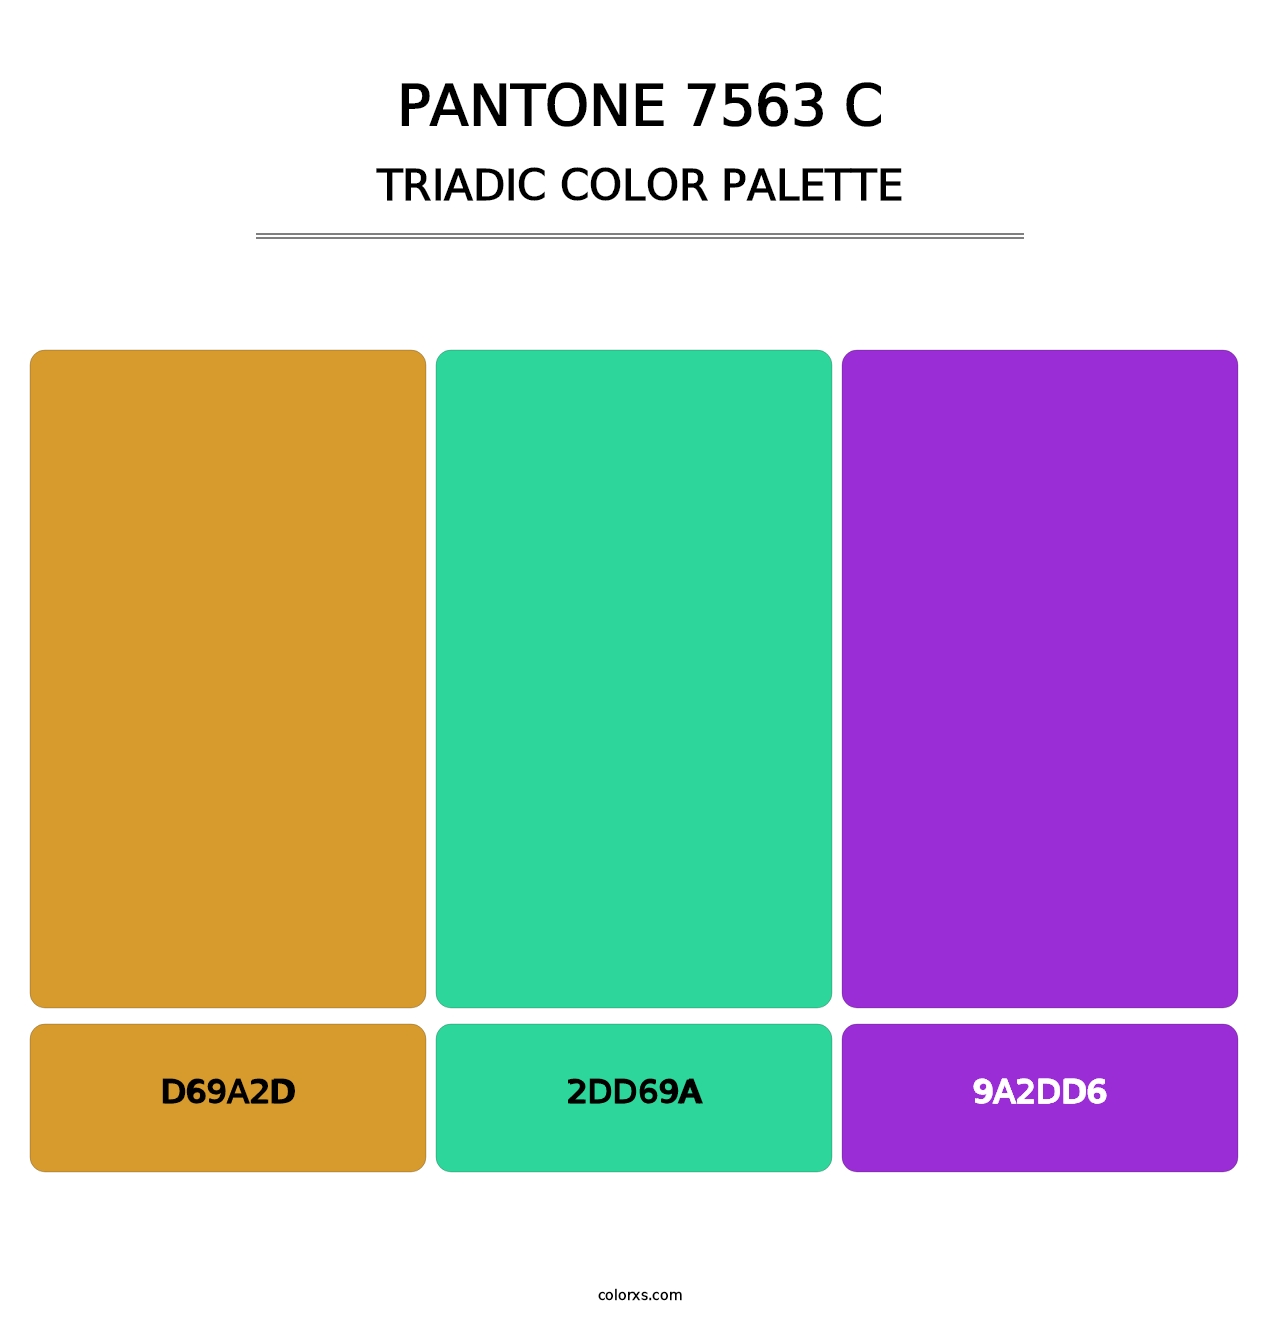 PANTONE 7563 C - Triadic Color Palette